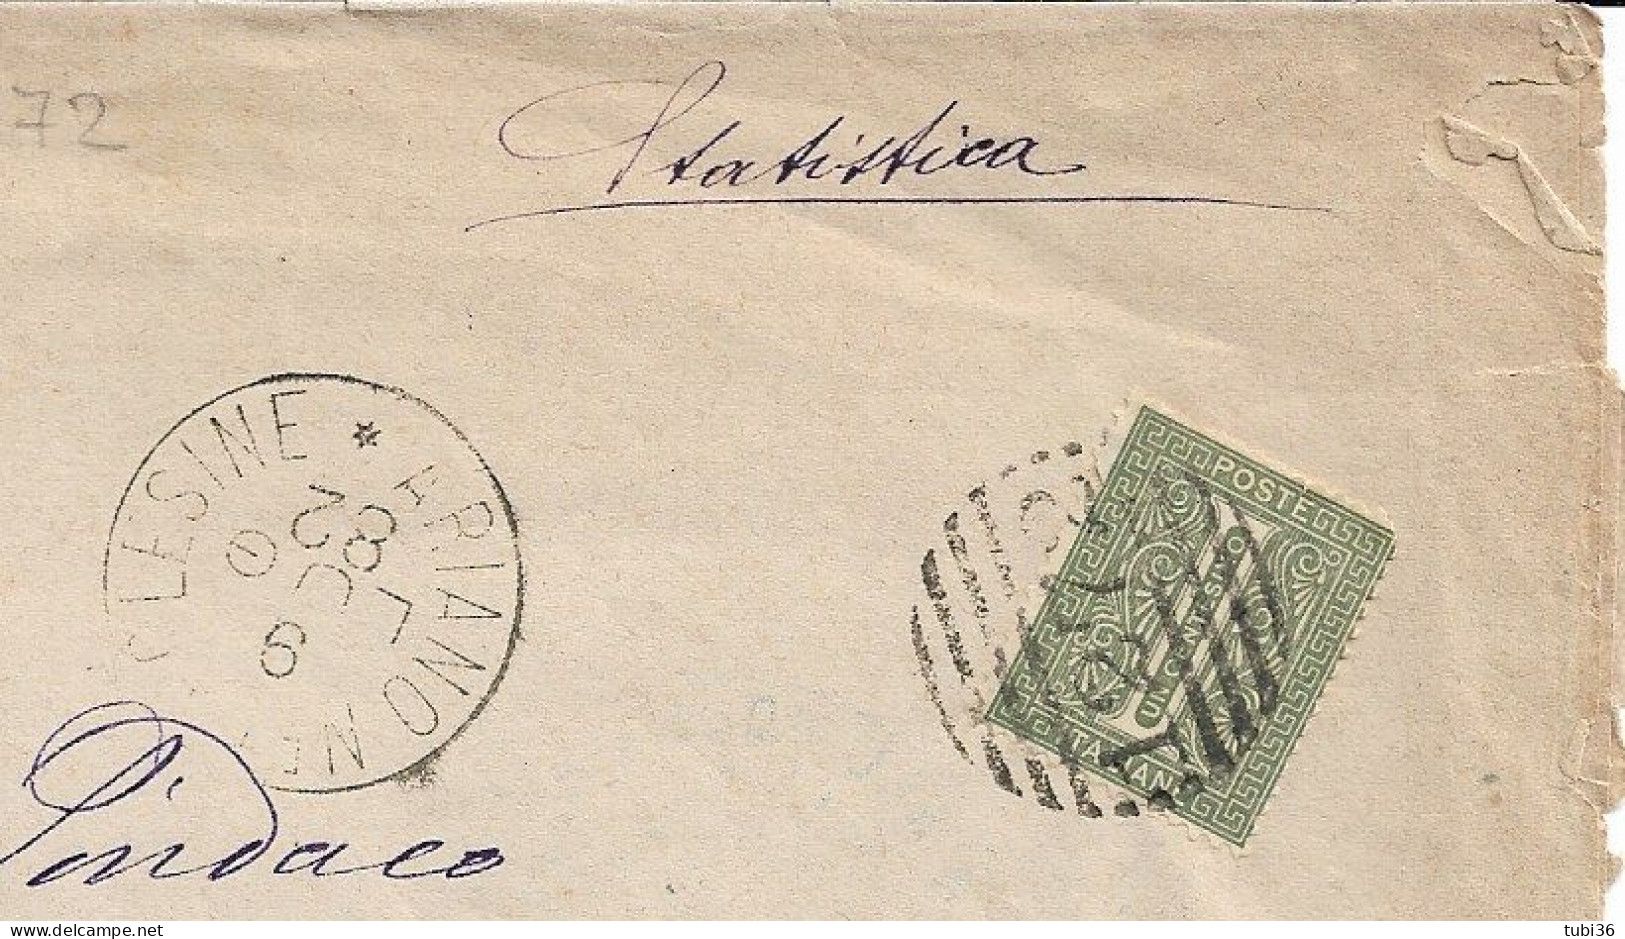 TIMBRO DATARIO DIAMETRO GRANDE ABBINATO A NUMERALE TONDO A BARRE 1272,SU PIEGO COMUNALE,1882 -ARIANO POLESINE- CODIGORO - Marcophilie